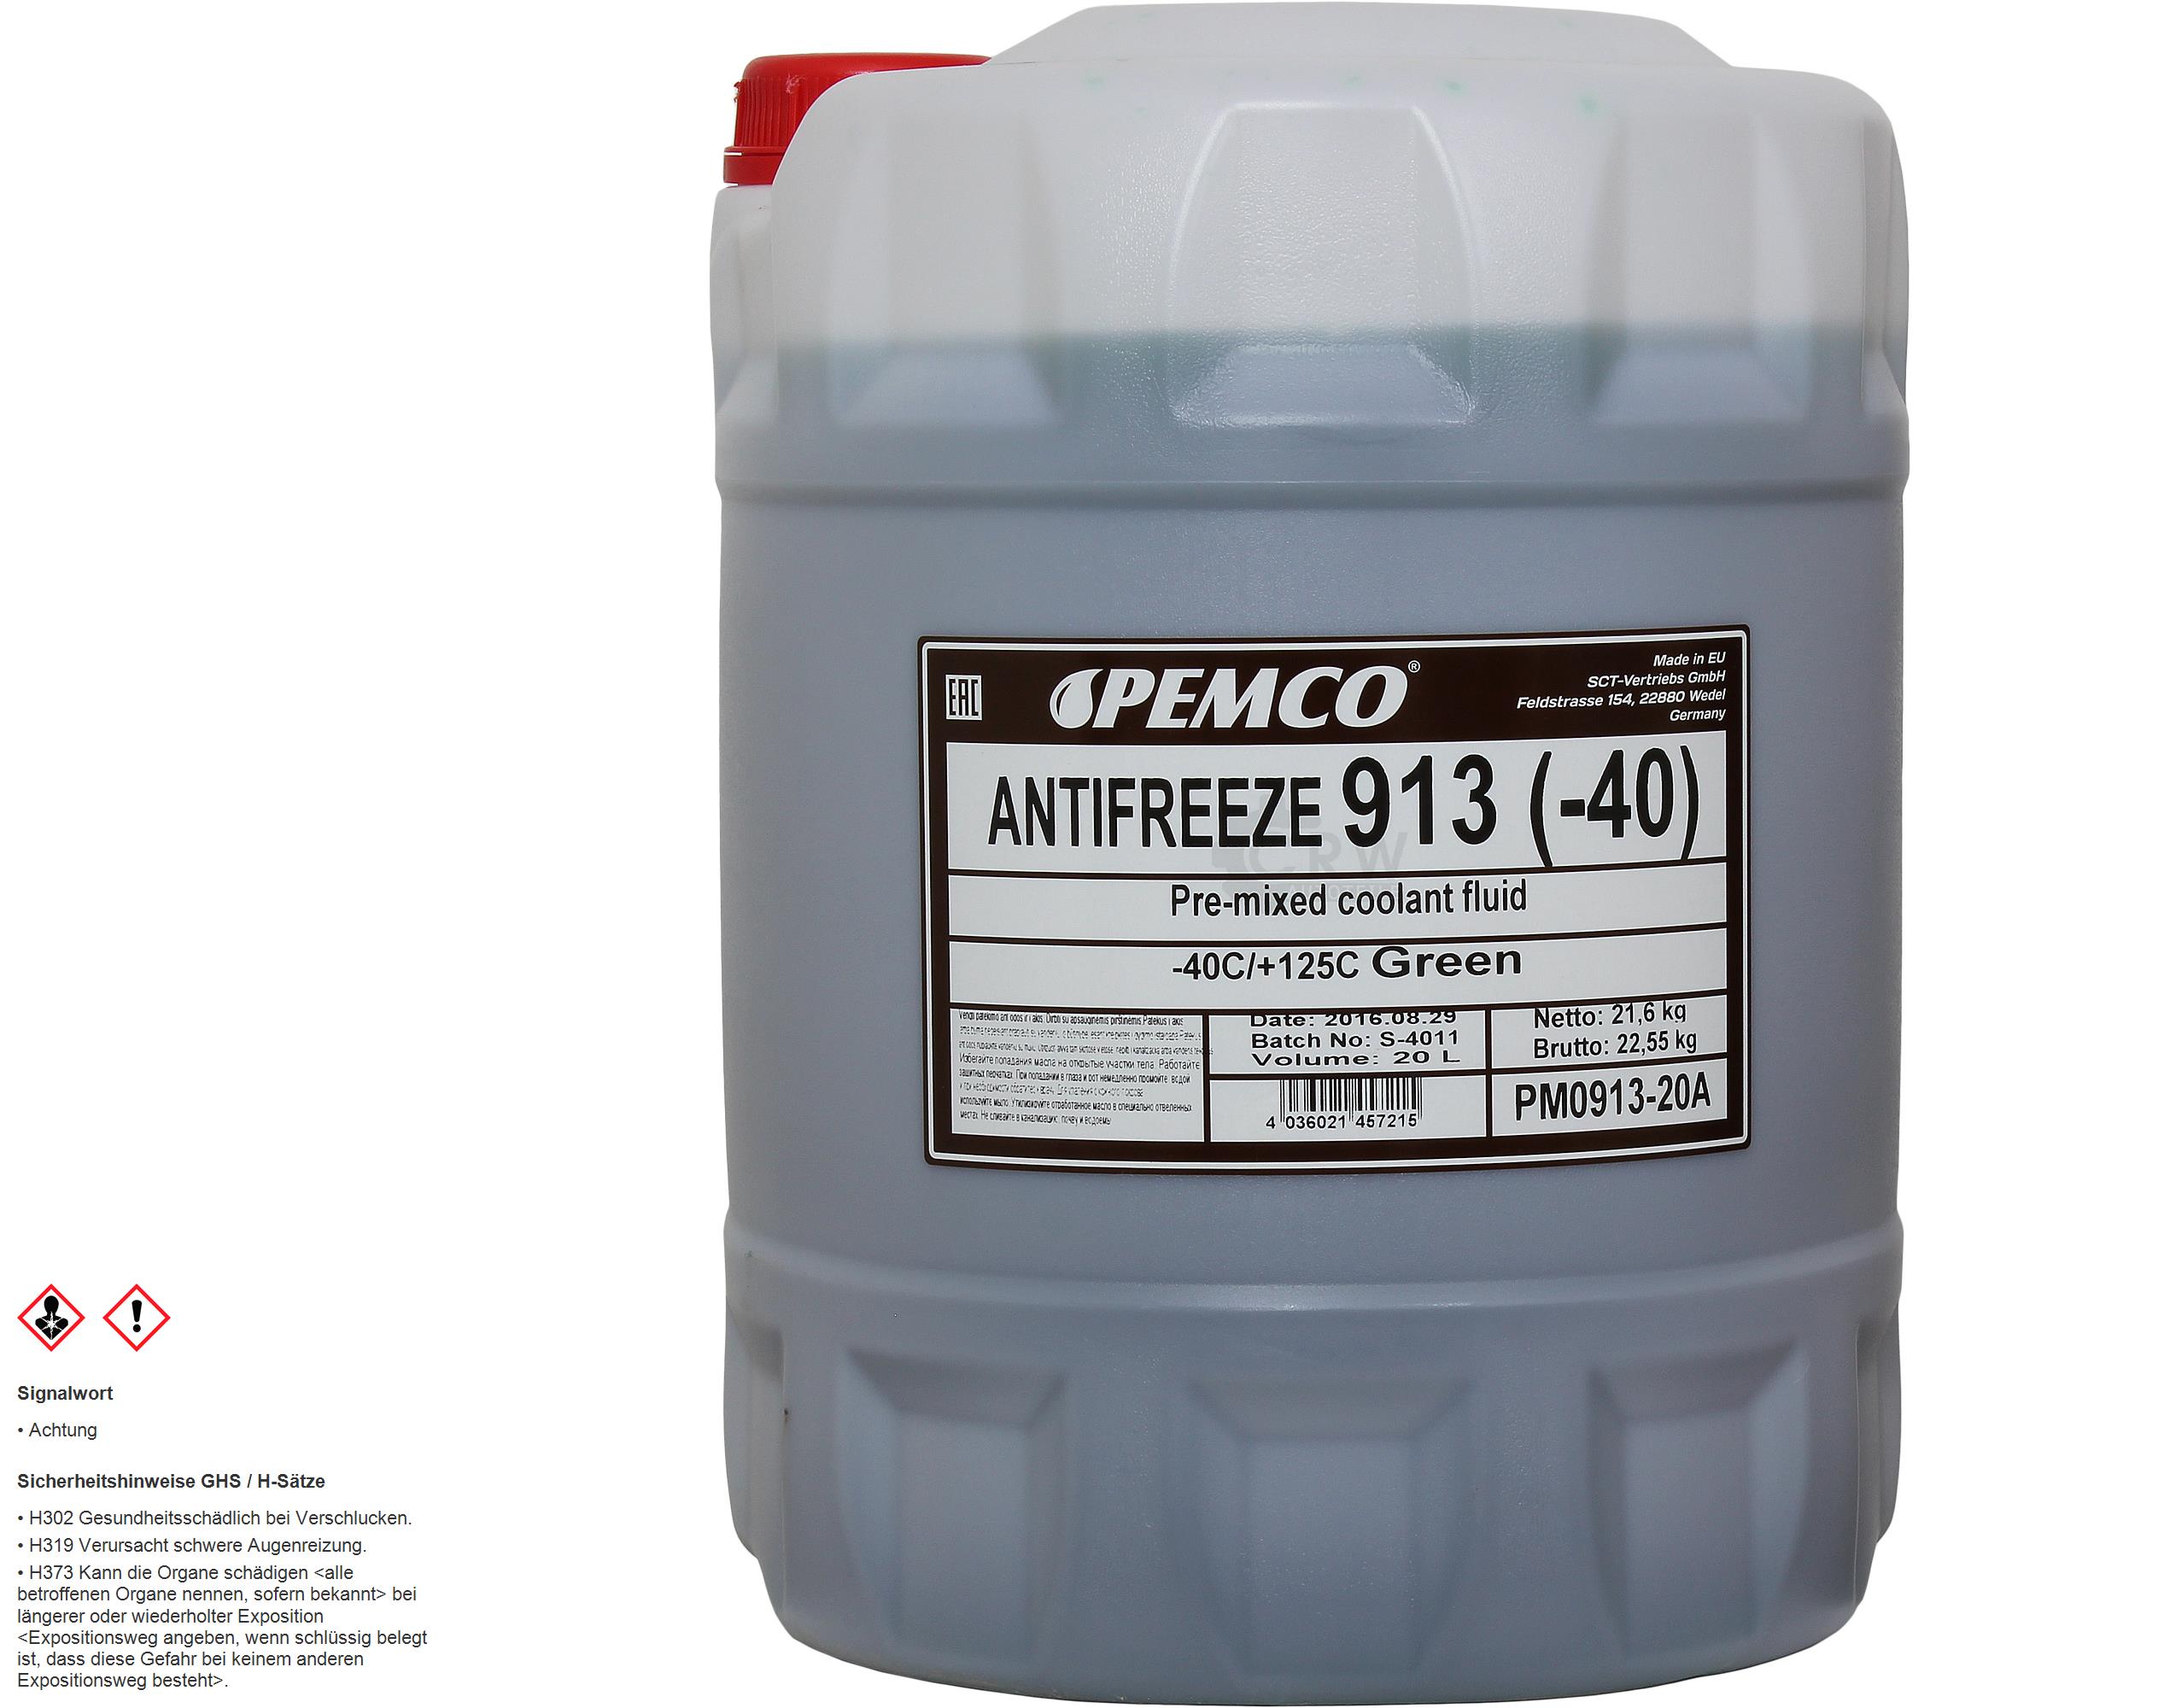 20 Liter  PEMCO Kühlerfrostschutz Antifreeze 913 (-40) grün green G13